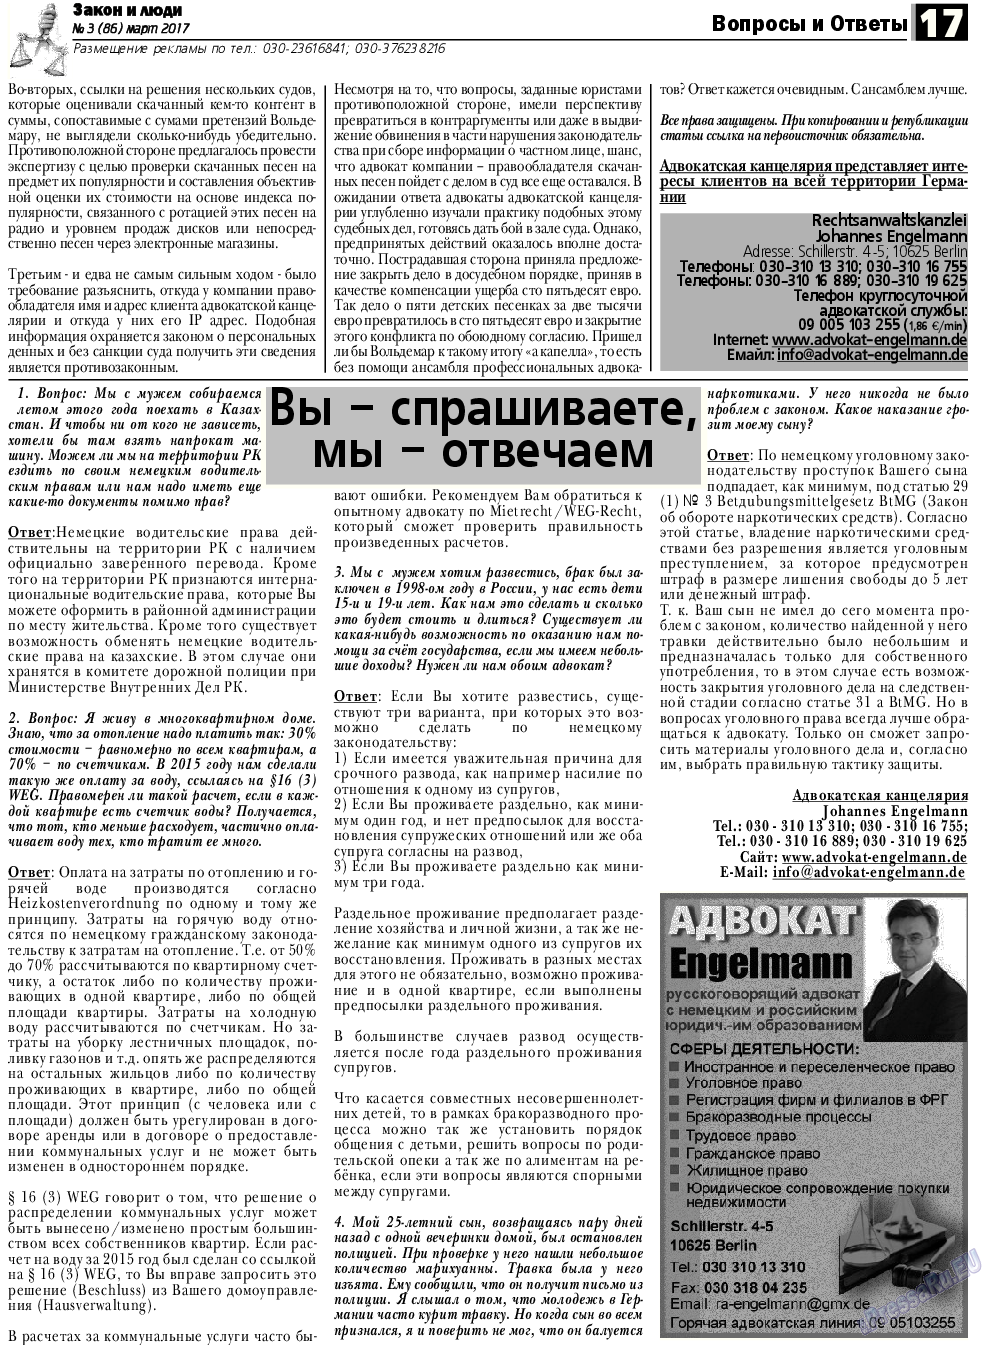 Закон и люди, газета. 2017 №3 стр.17